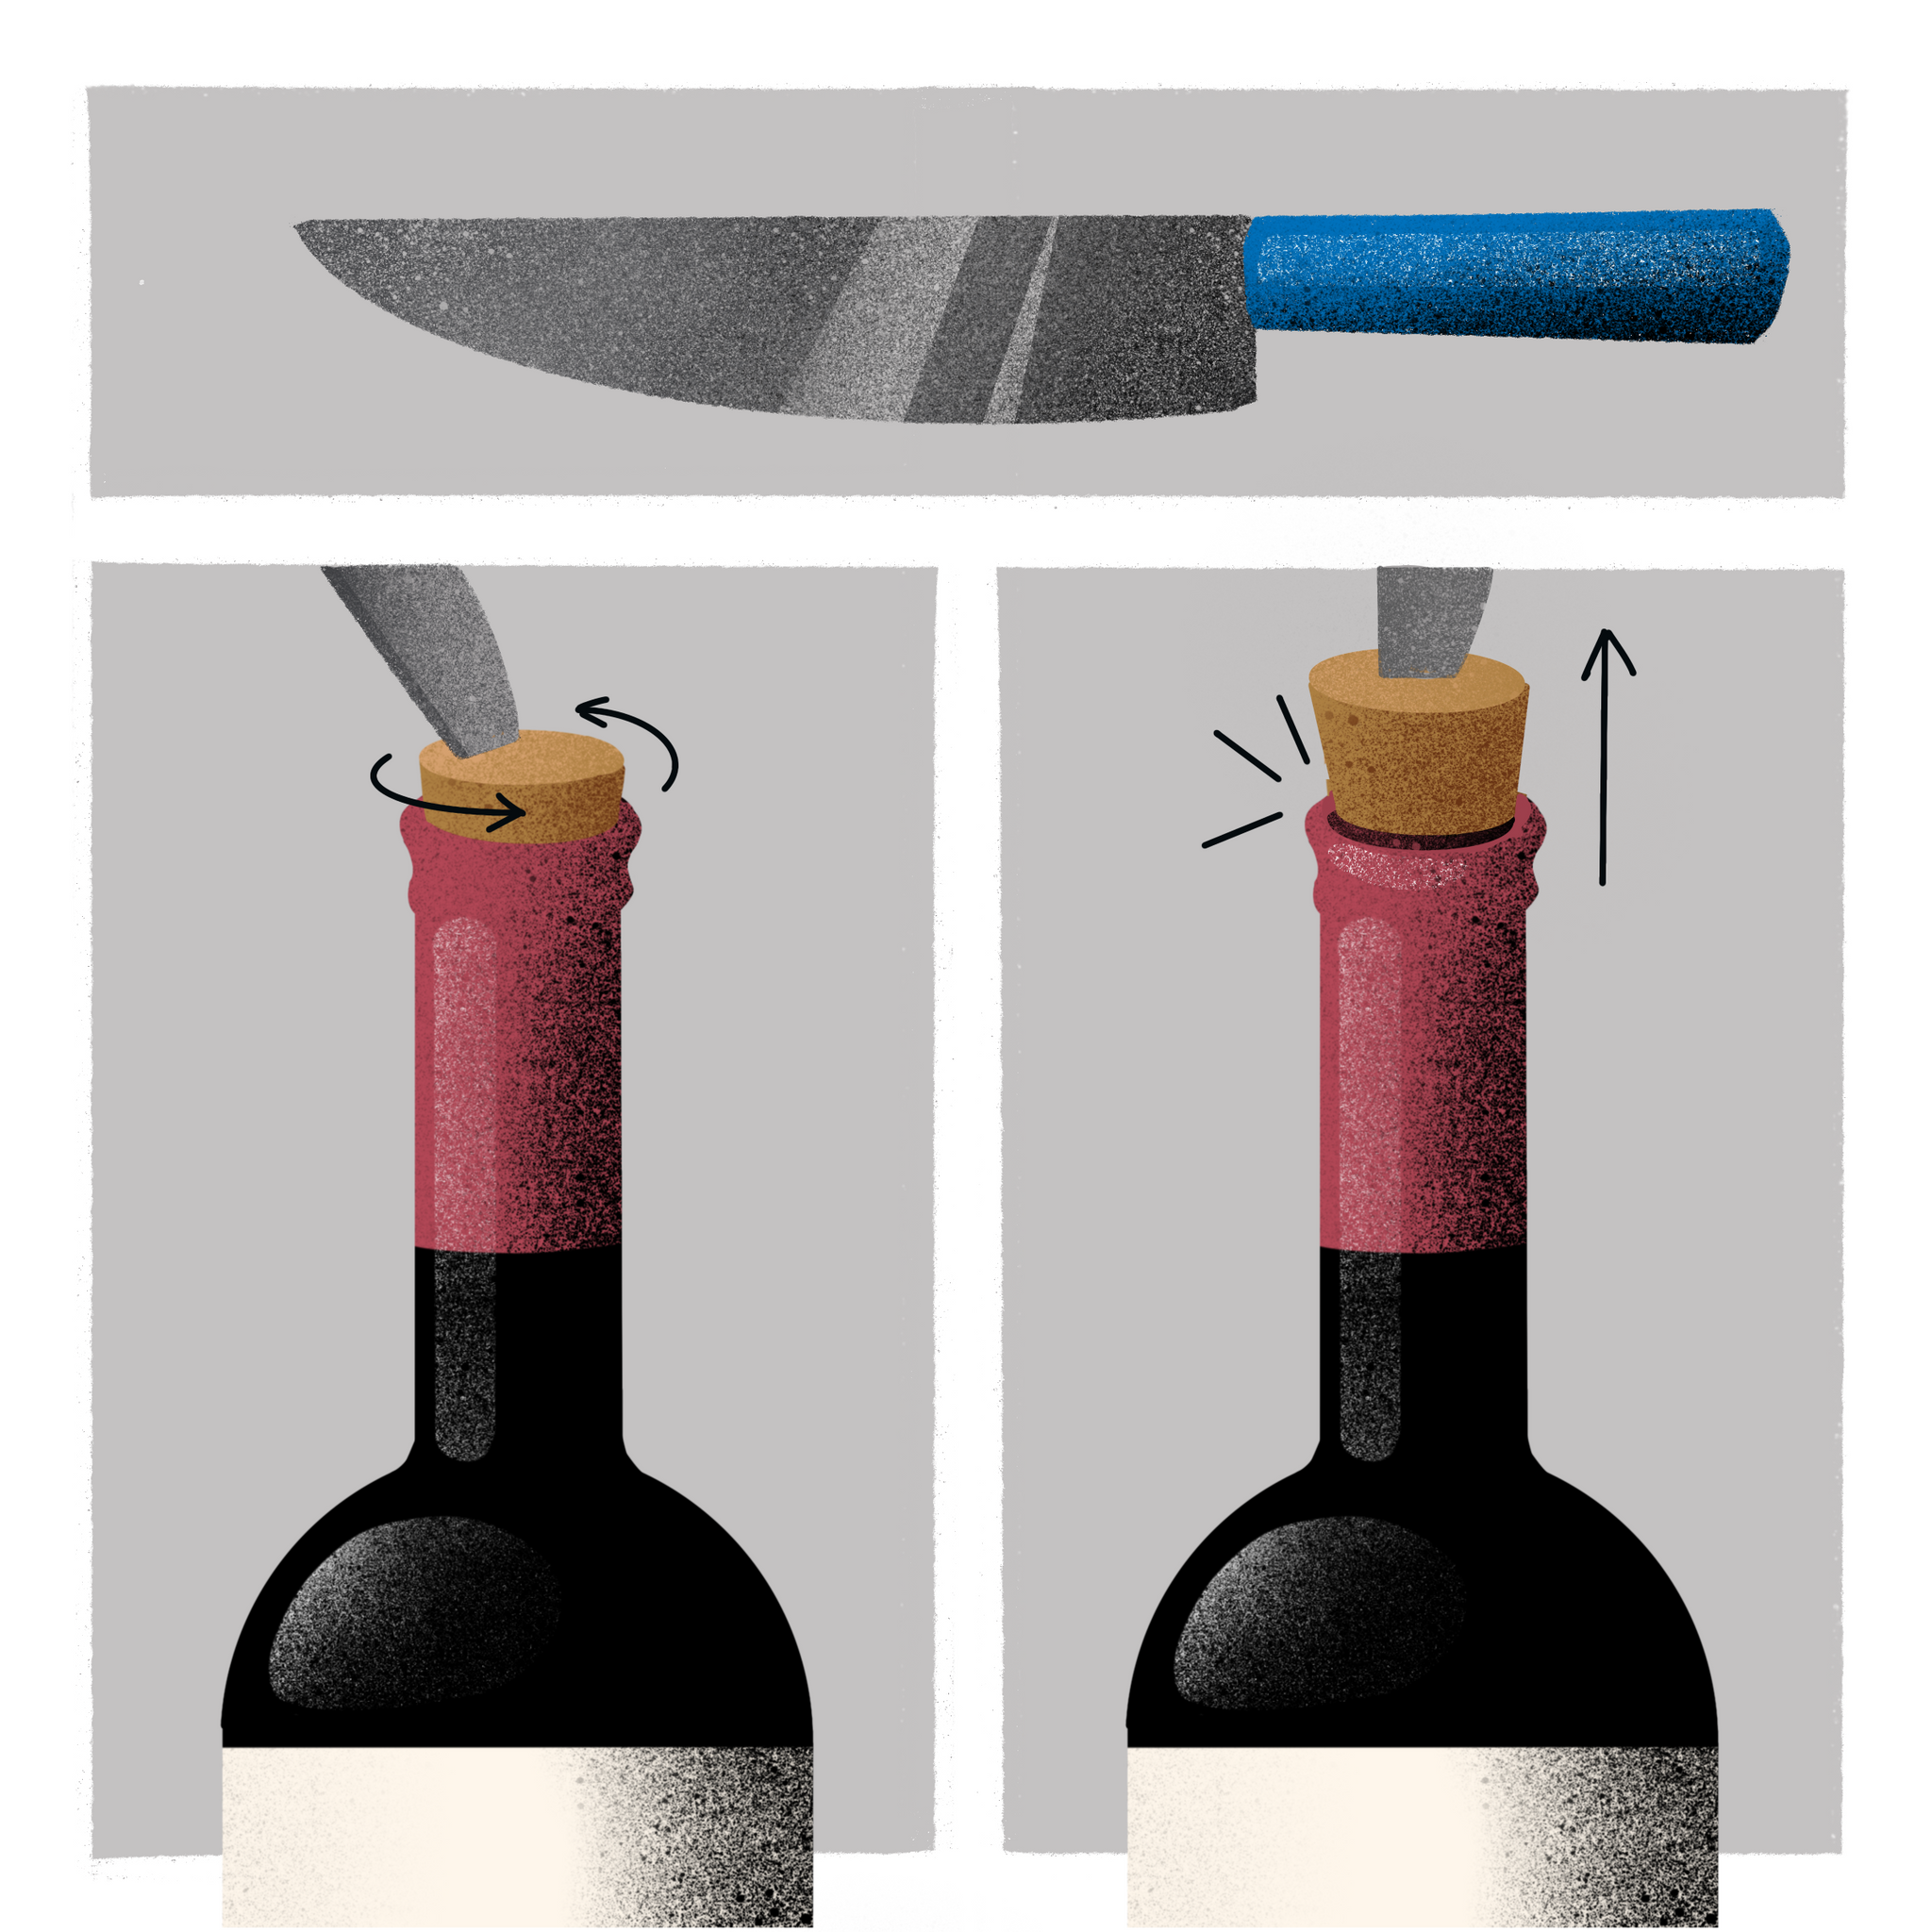 7 лучших способов открыть вино без штопора